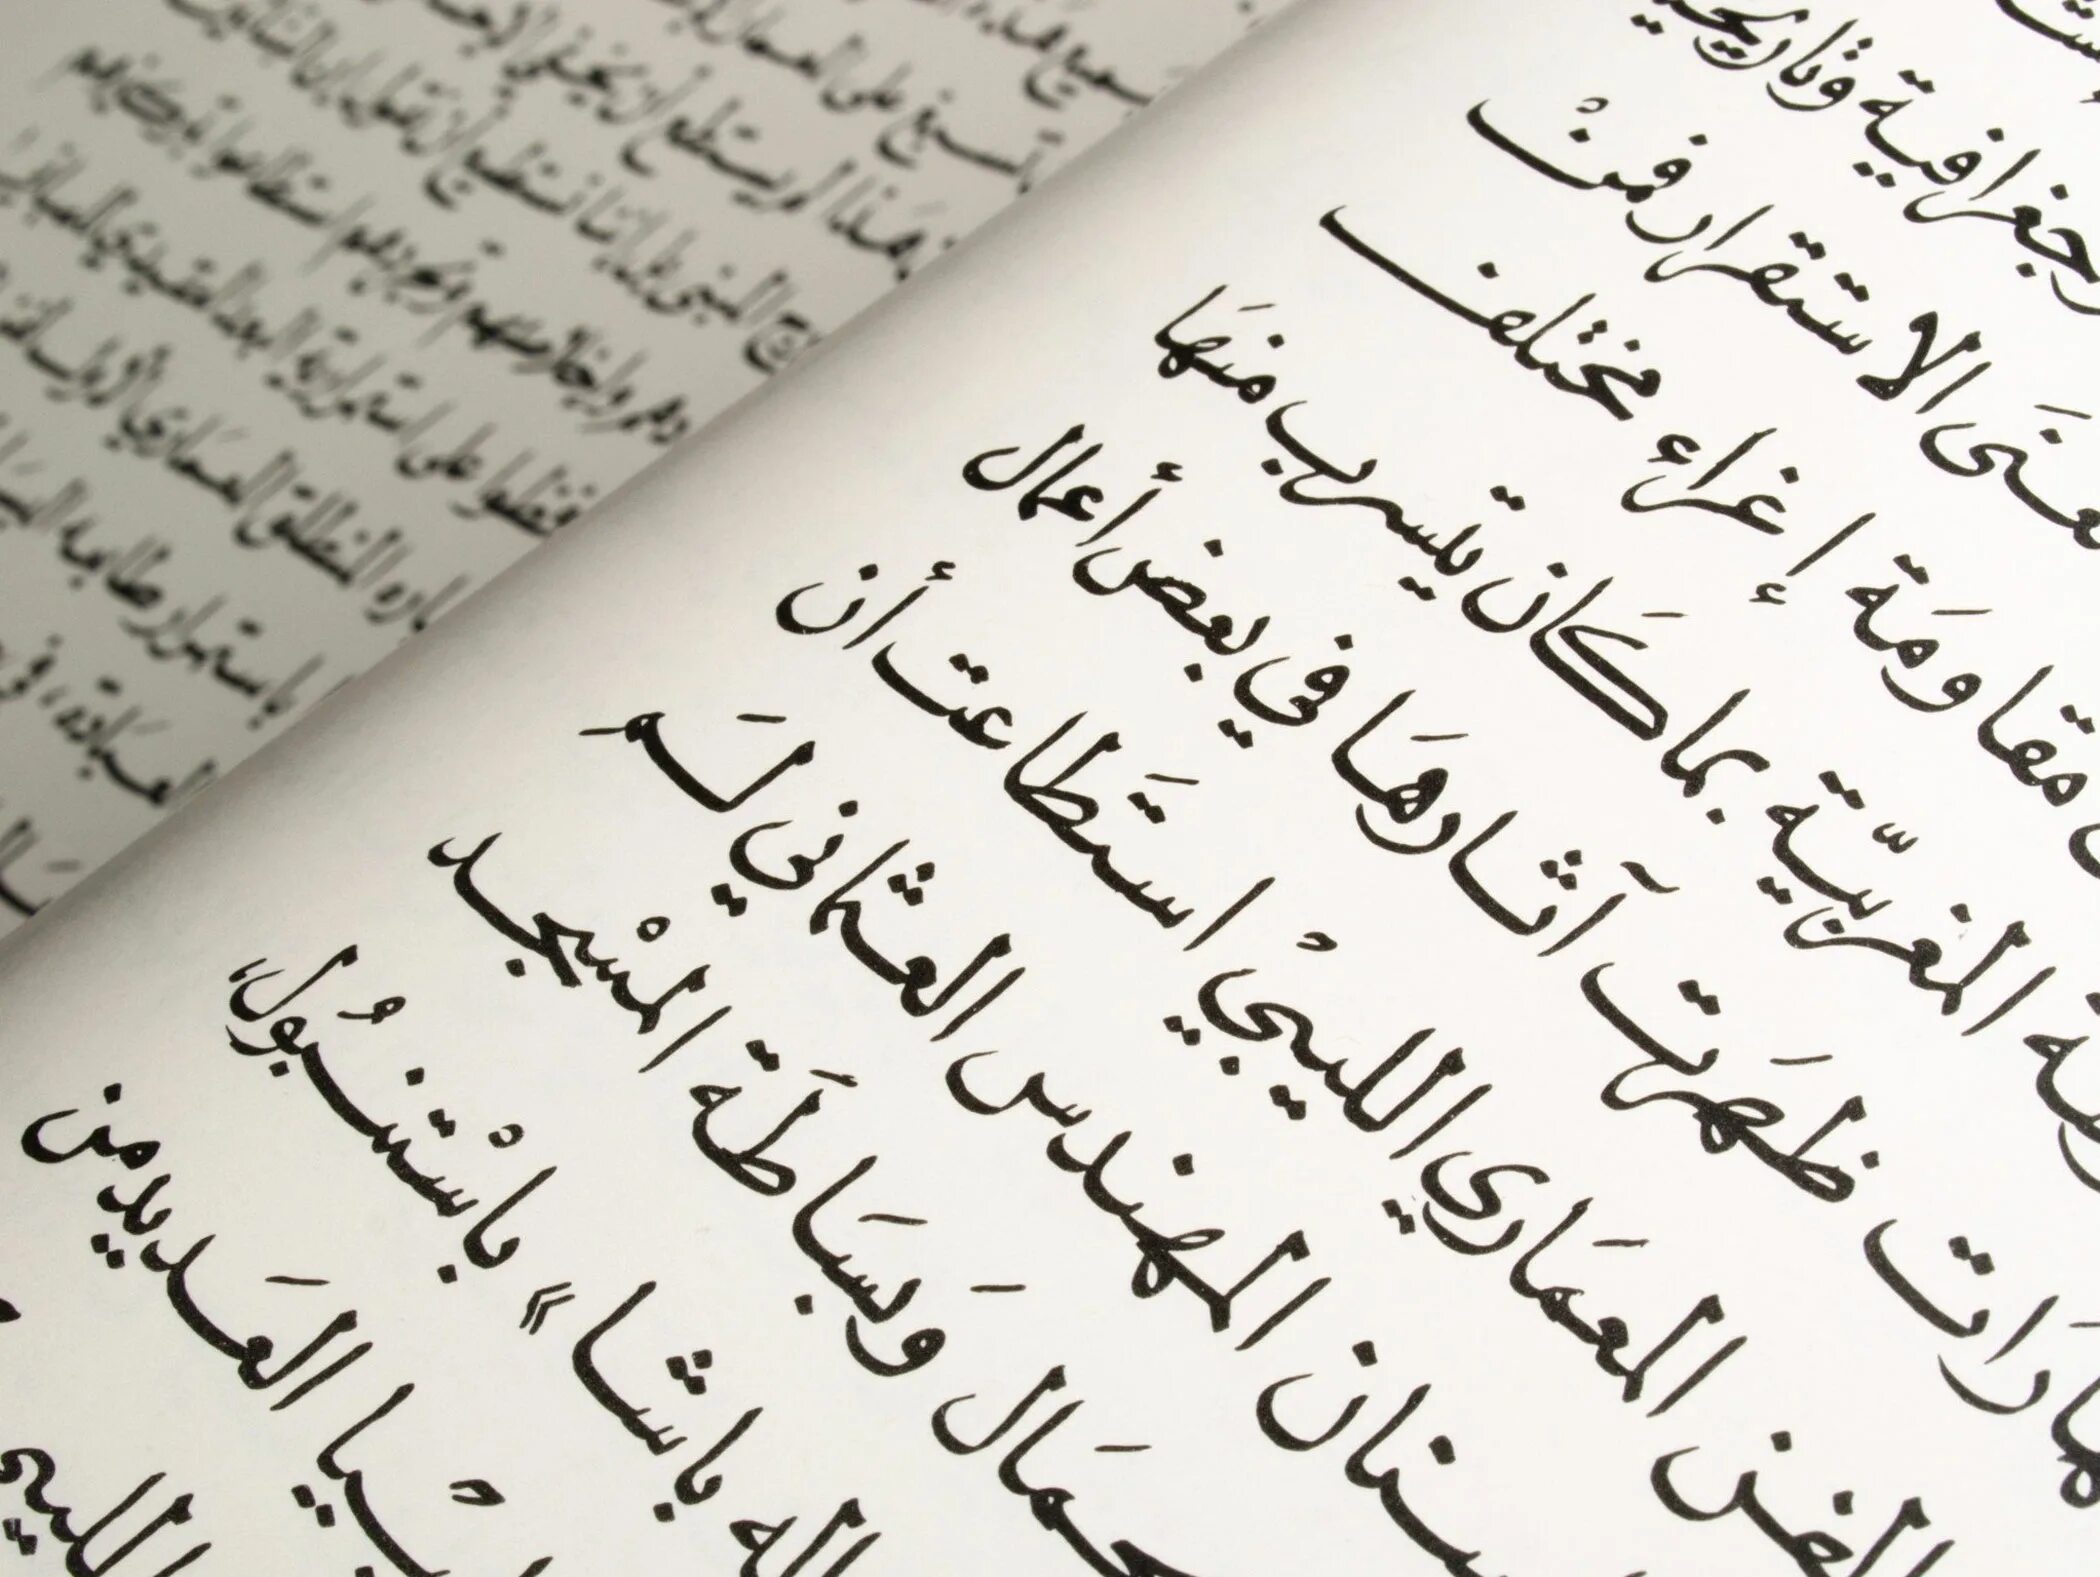 Учиться арабскому языку